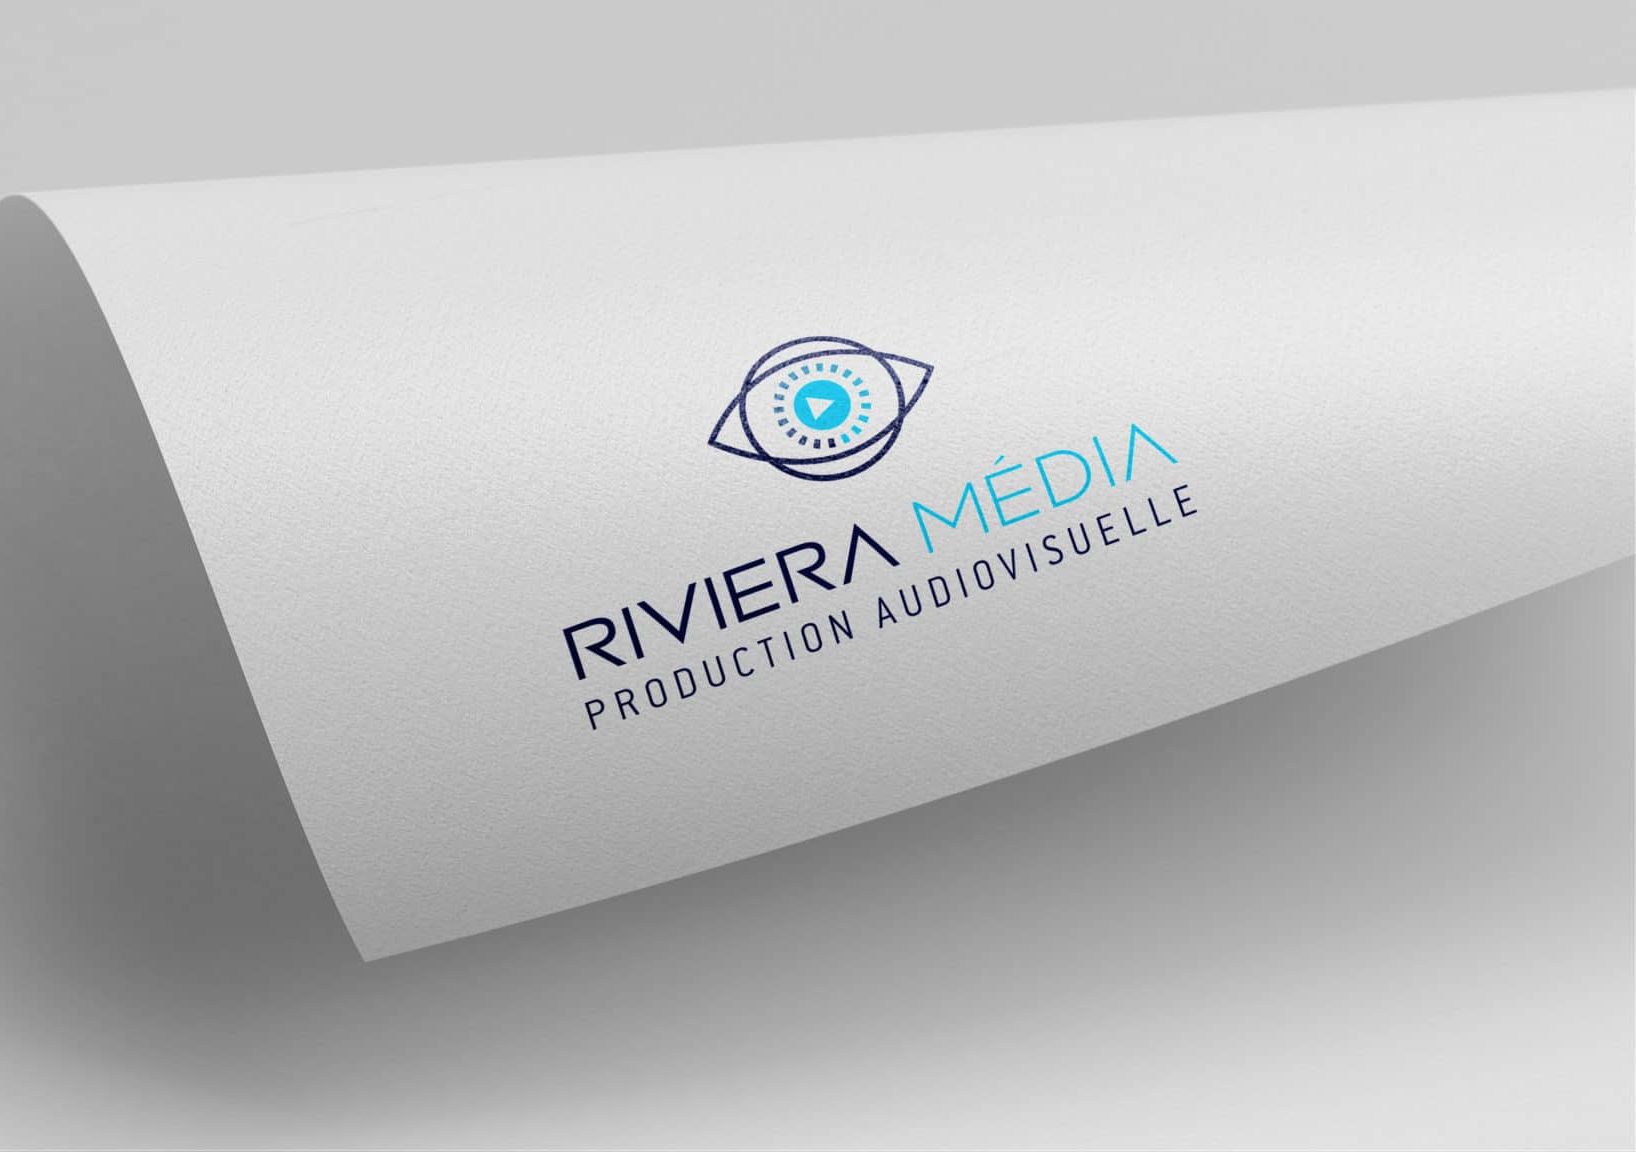 Riviera Media